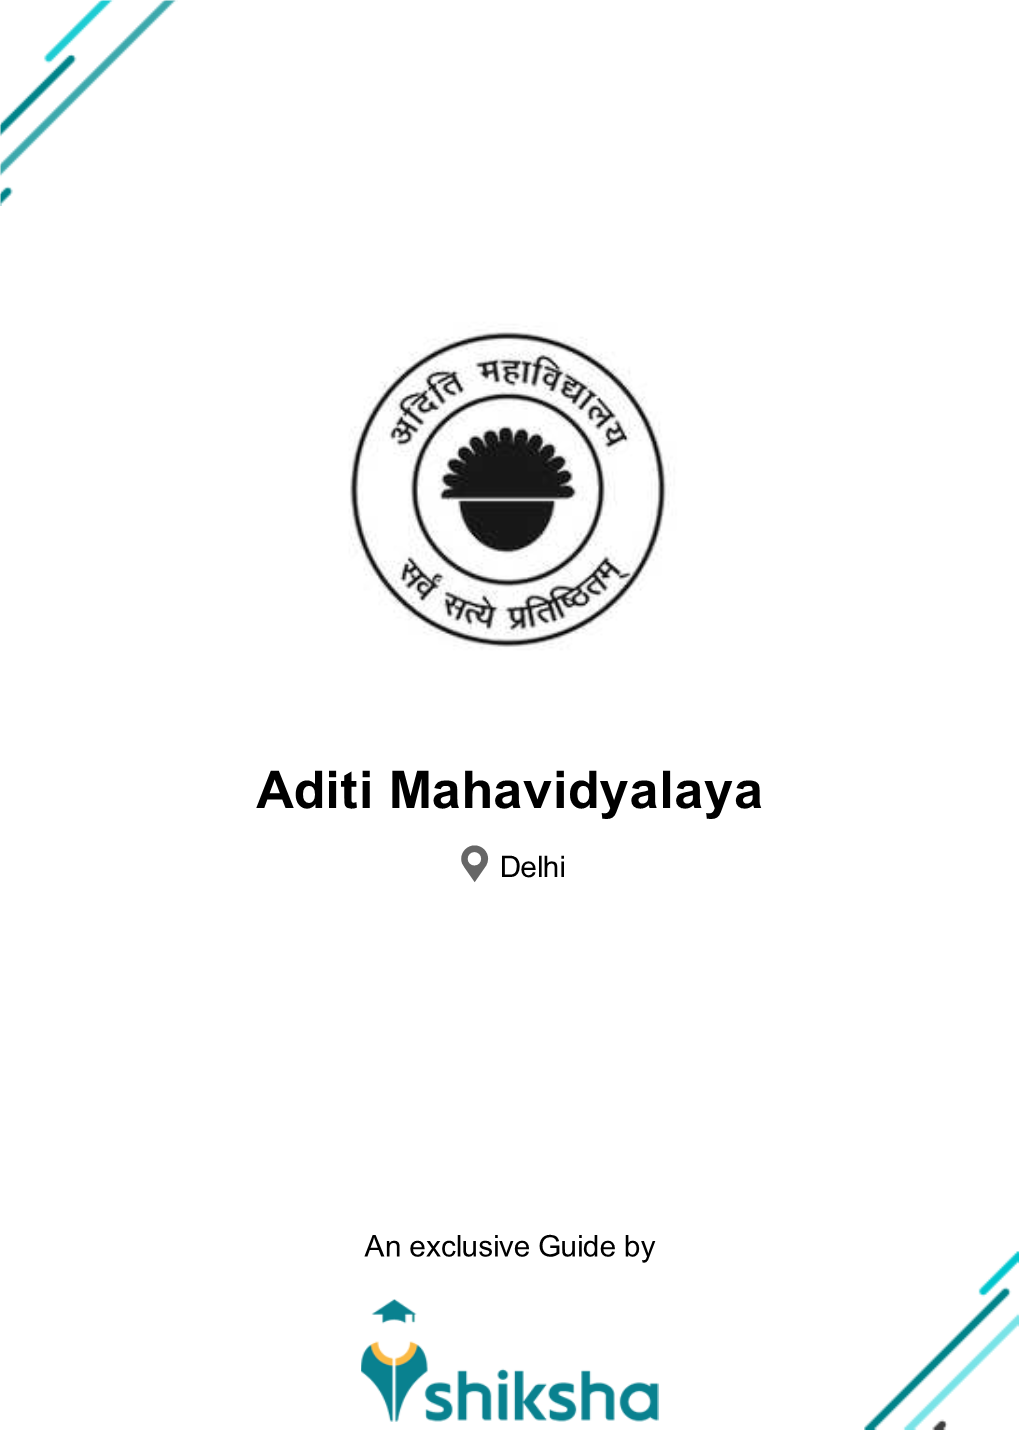 Aditi Mahavidyalaya